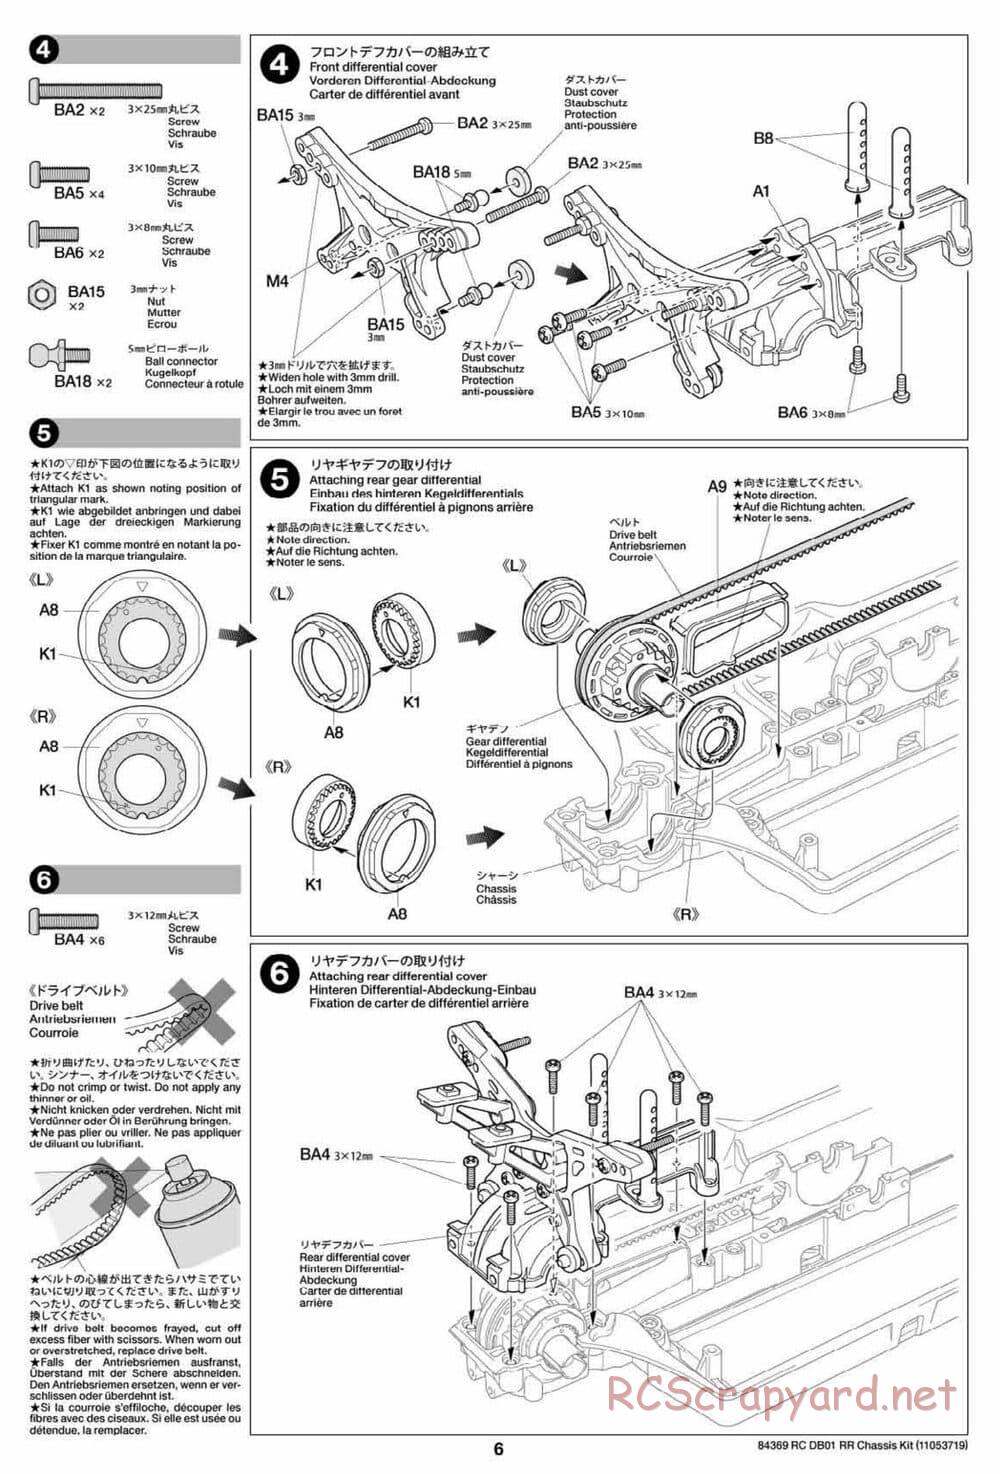 Tamiya - DB-01 RR Chassis - Manual - Page 6